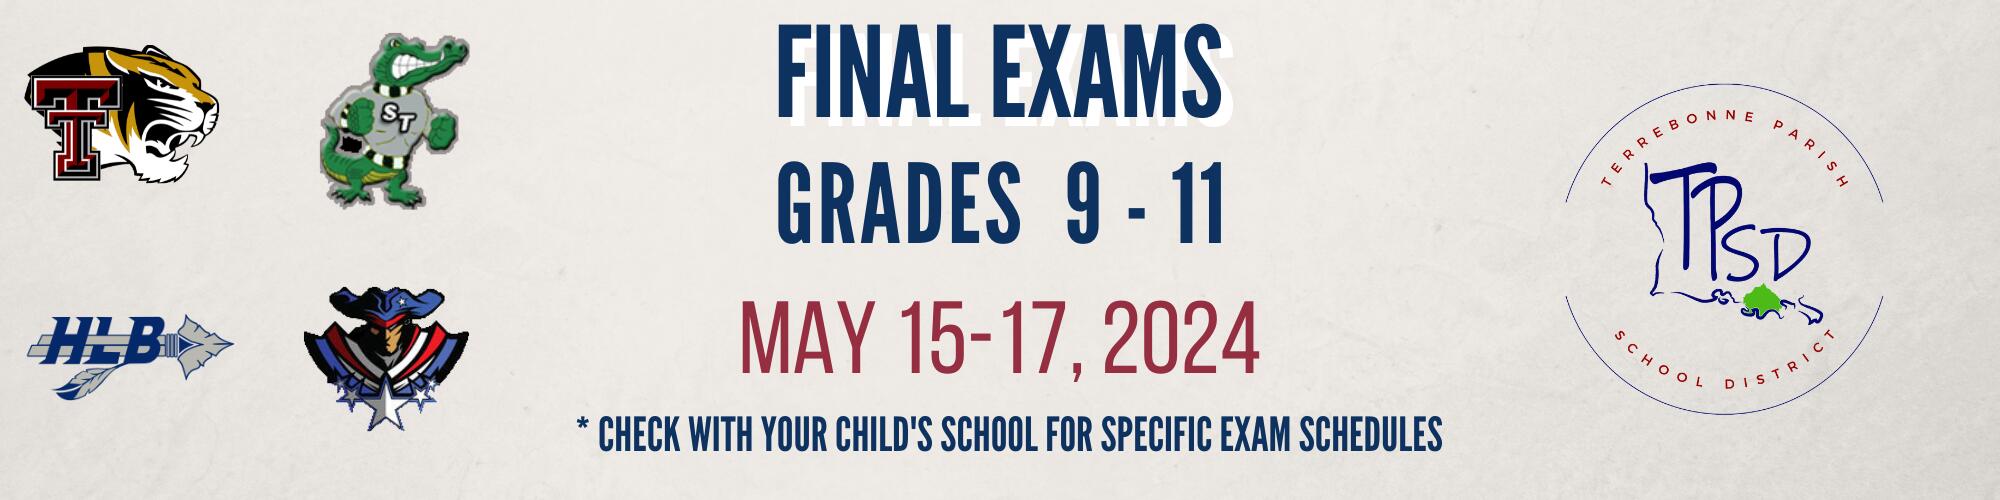 Final Exams - Grades 9 - 11